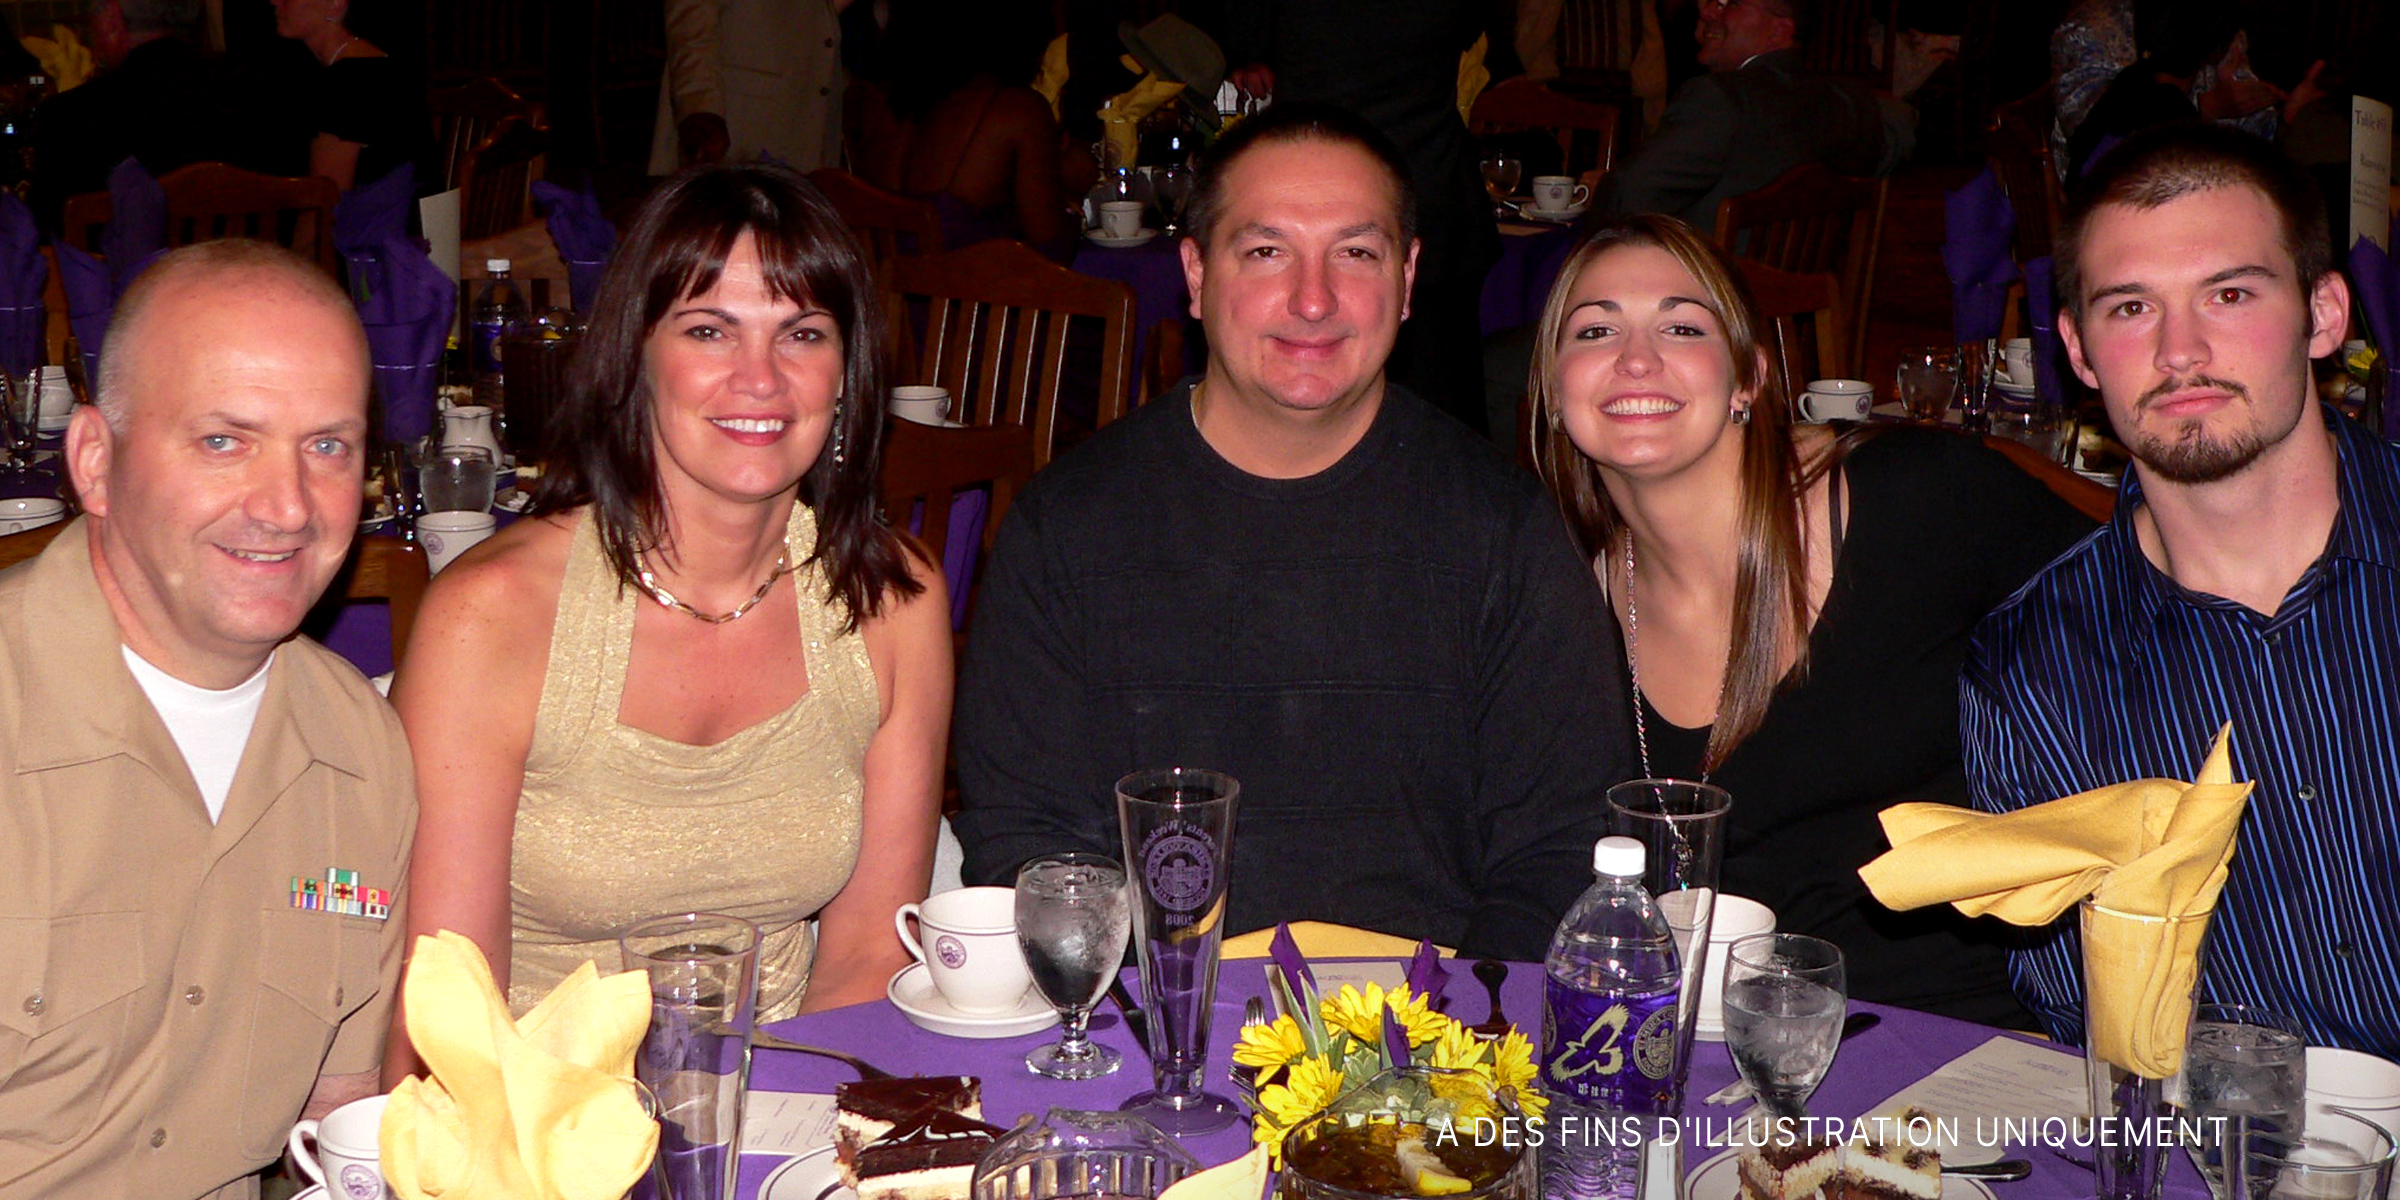 Des personnes réunies pour un dîner en famille dans un restaurant | Source : Flickr/CC BY 2.0